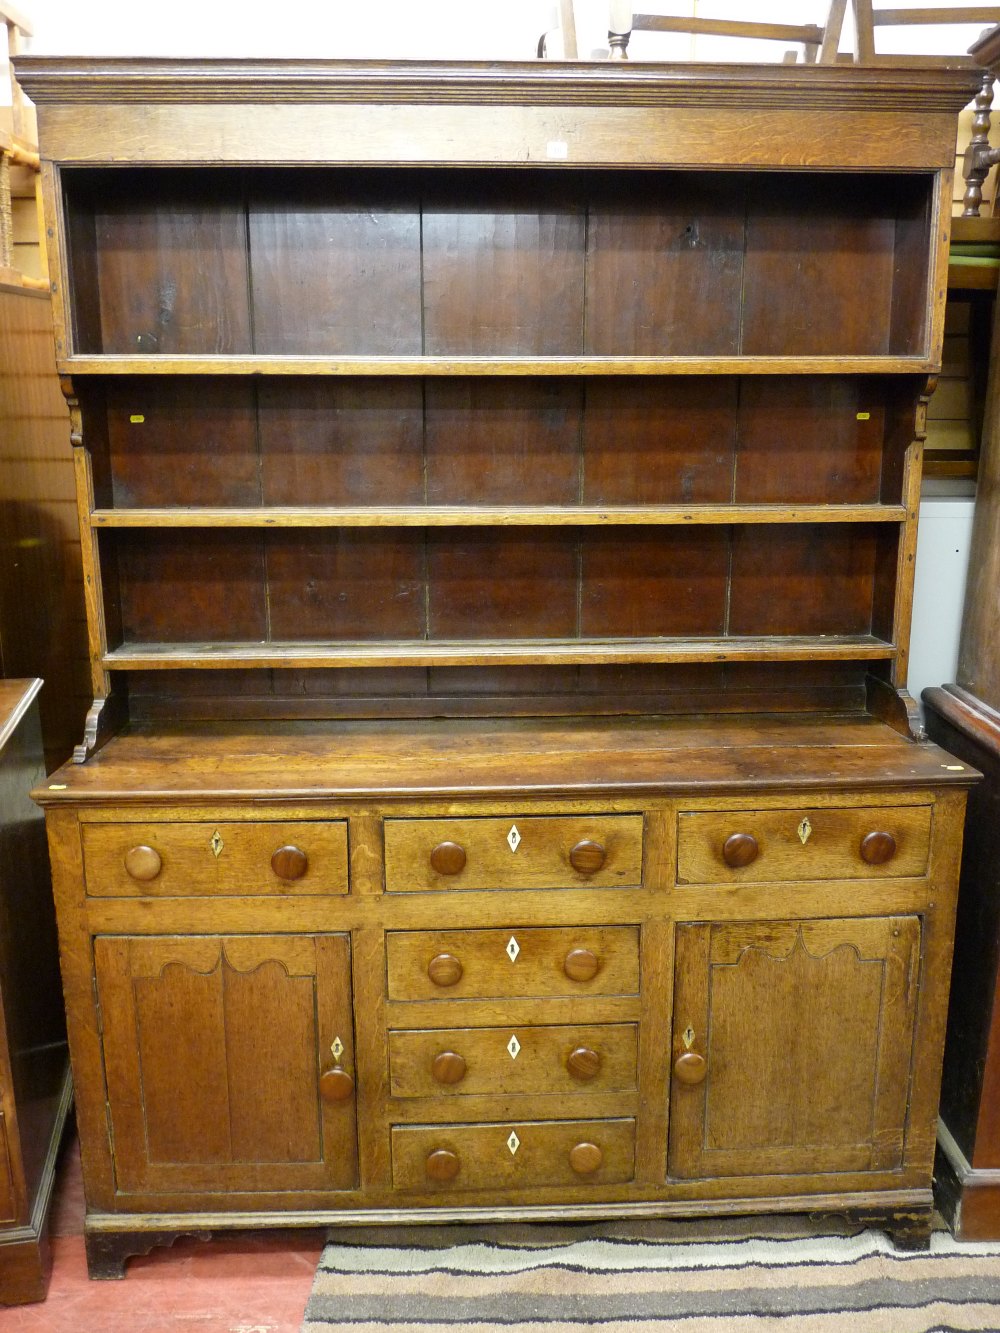 A neat mid 19th Century oak South Caernarfonshire Welsh dresser having a three shelf rack over a